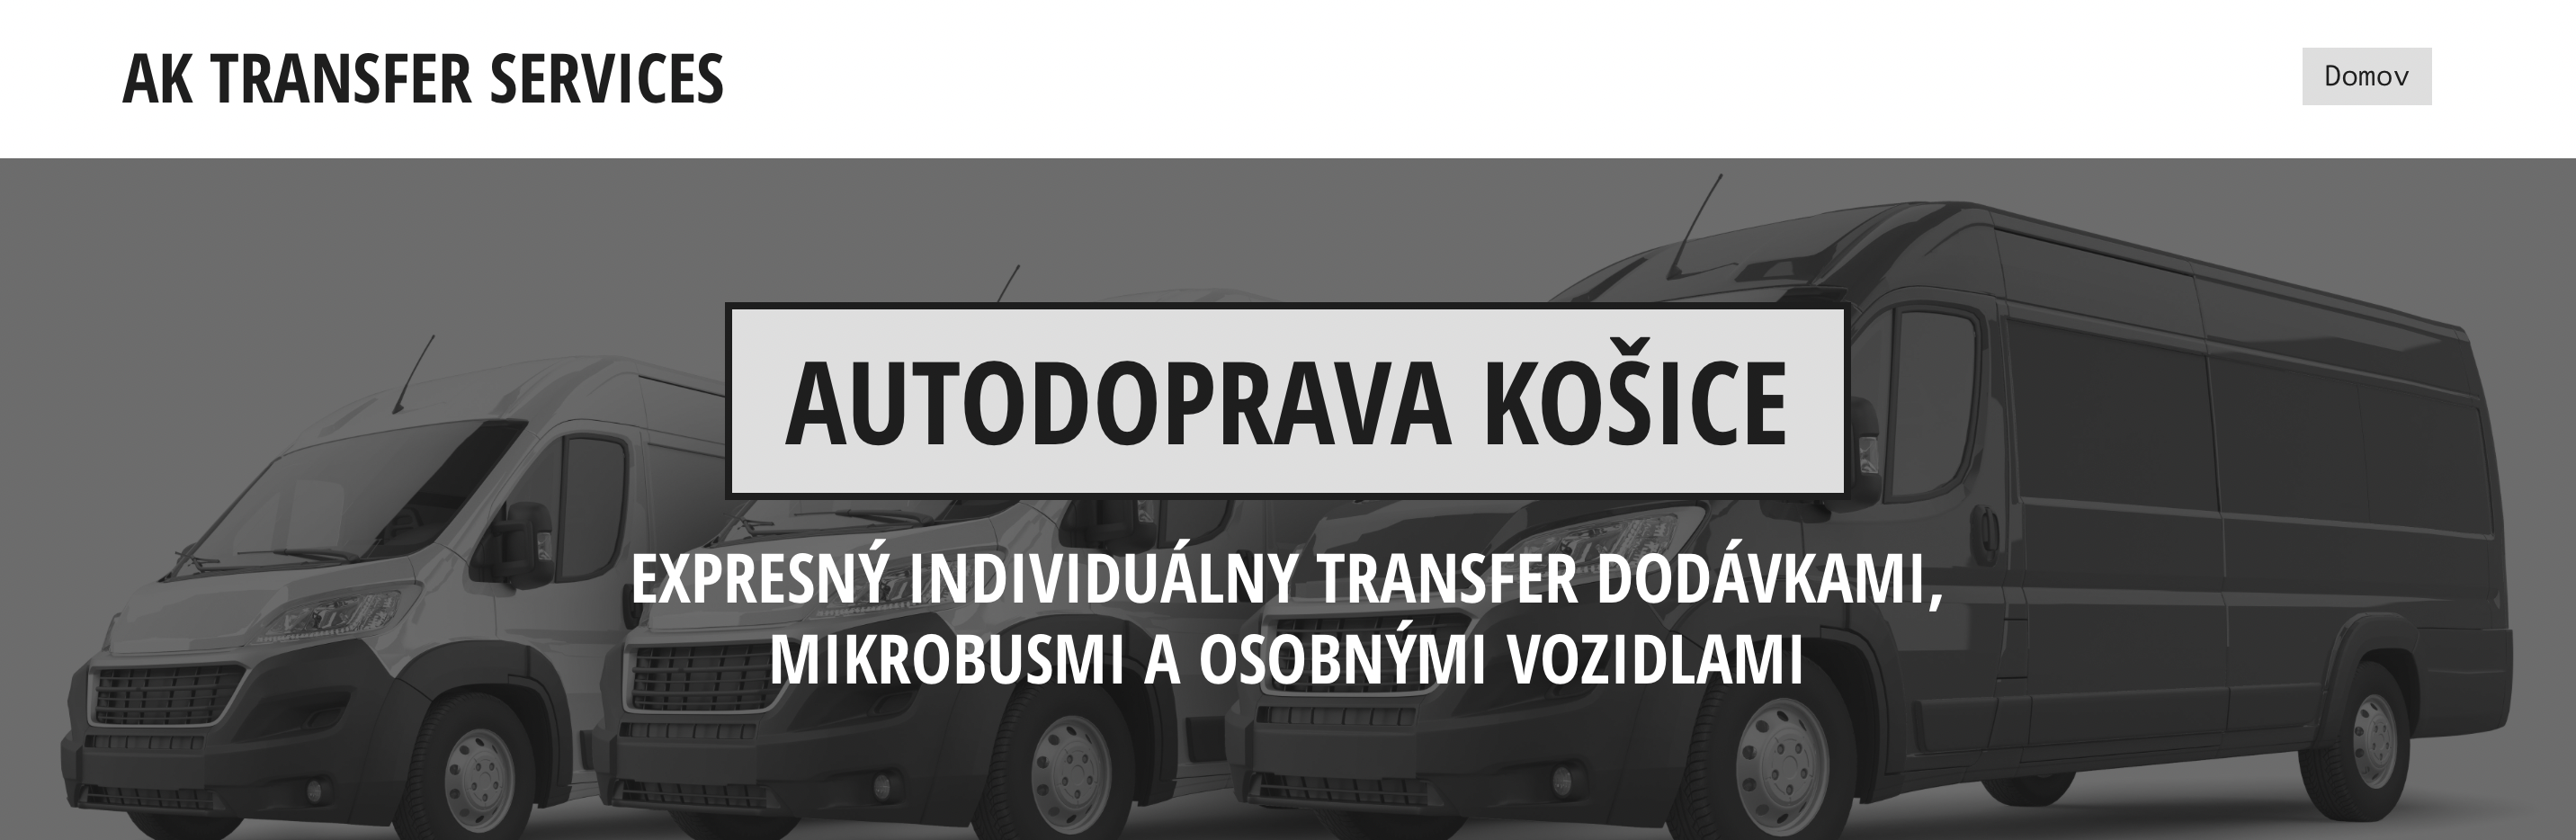 AK transfer services, individuálna preprava tovaru a osôb